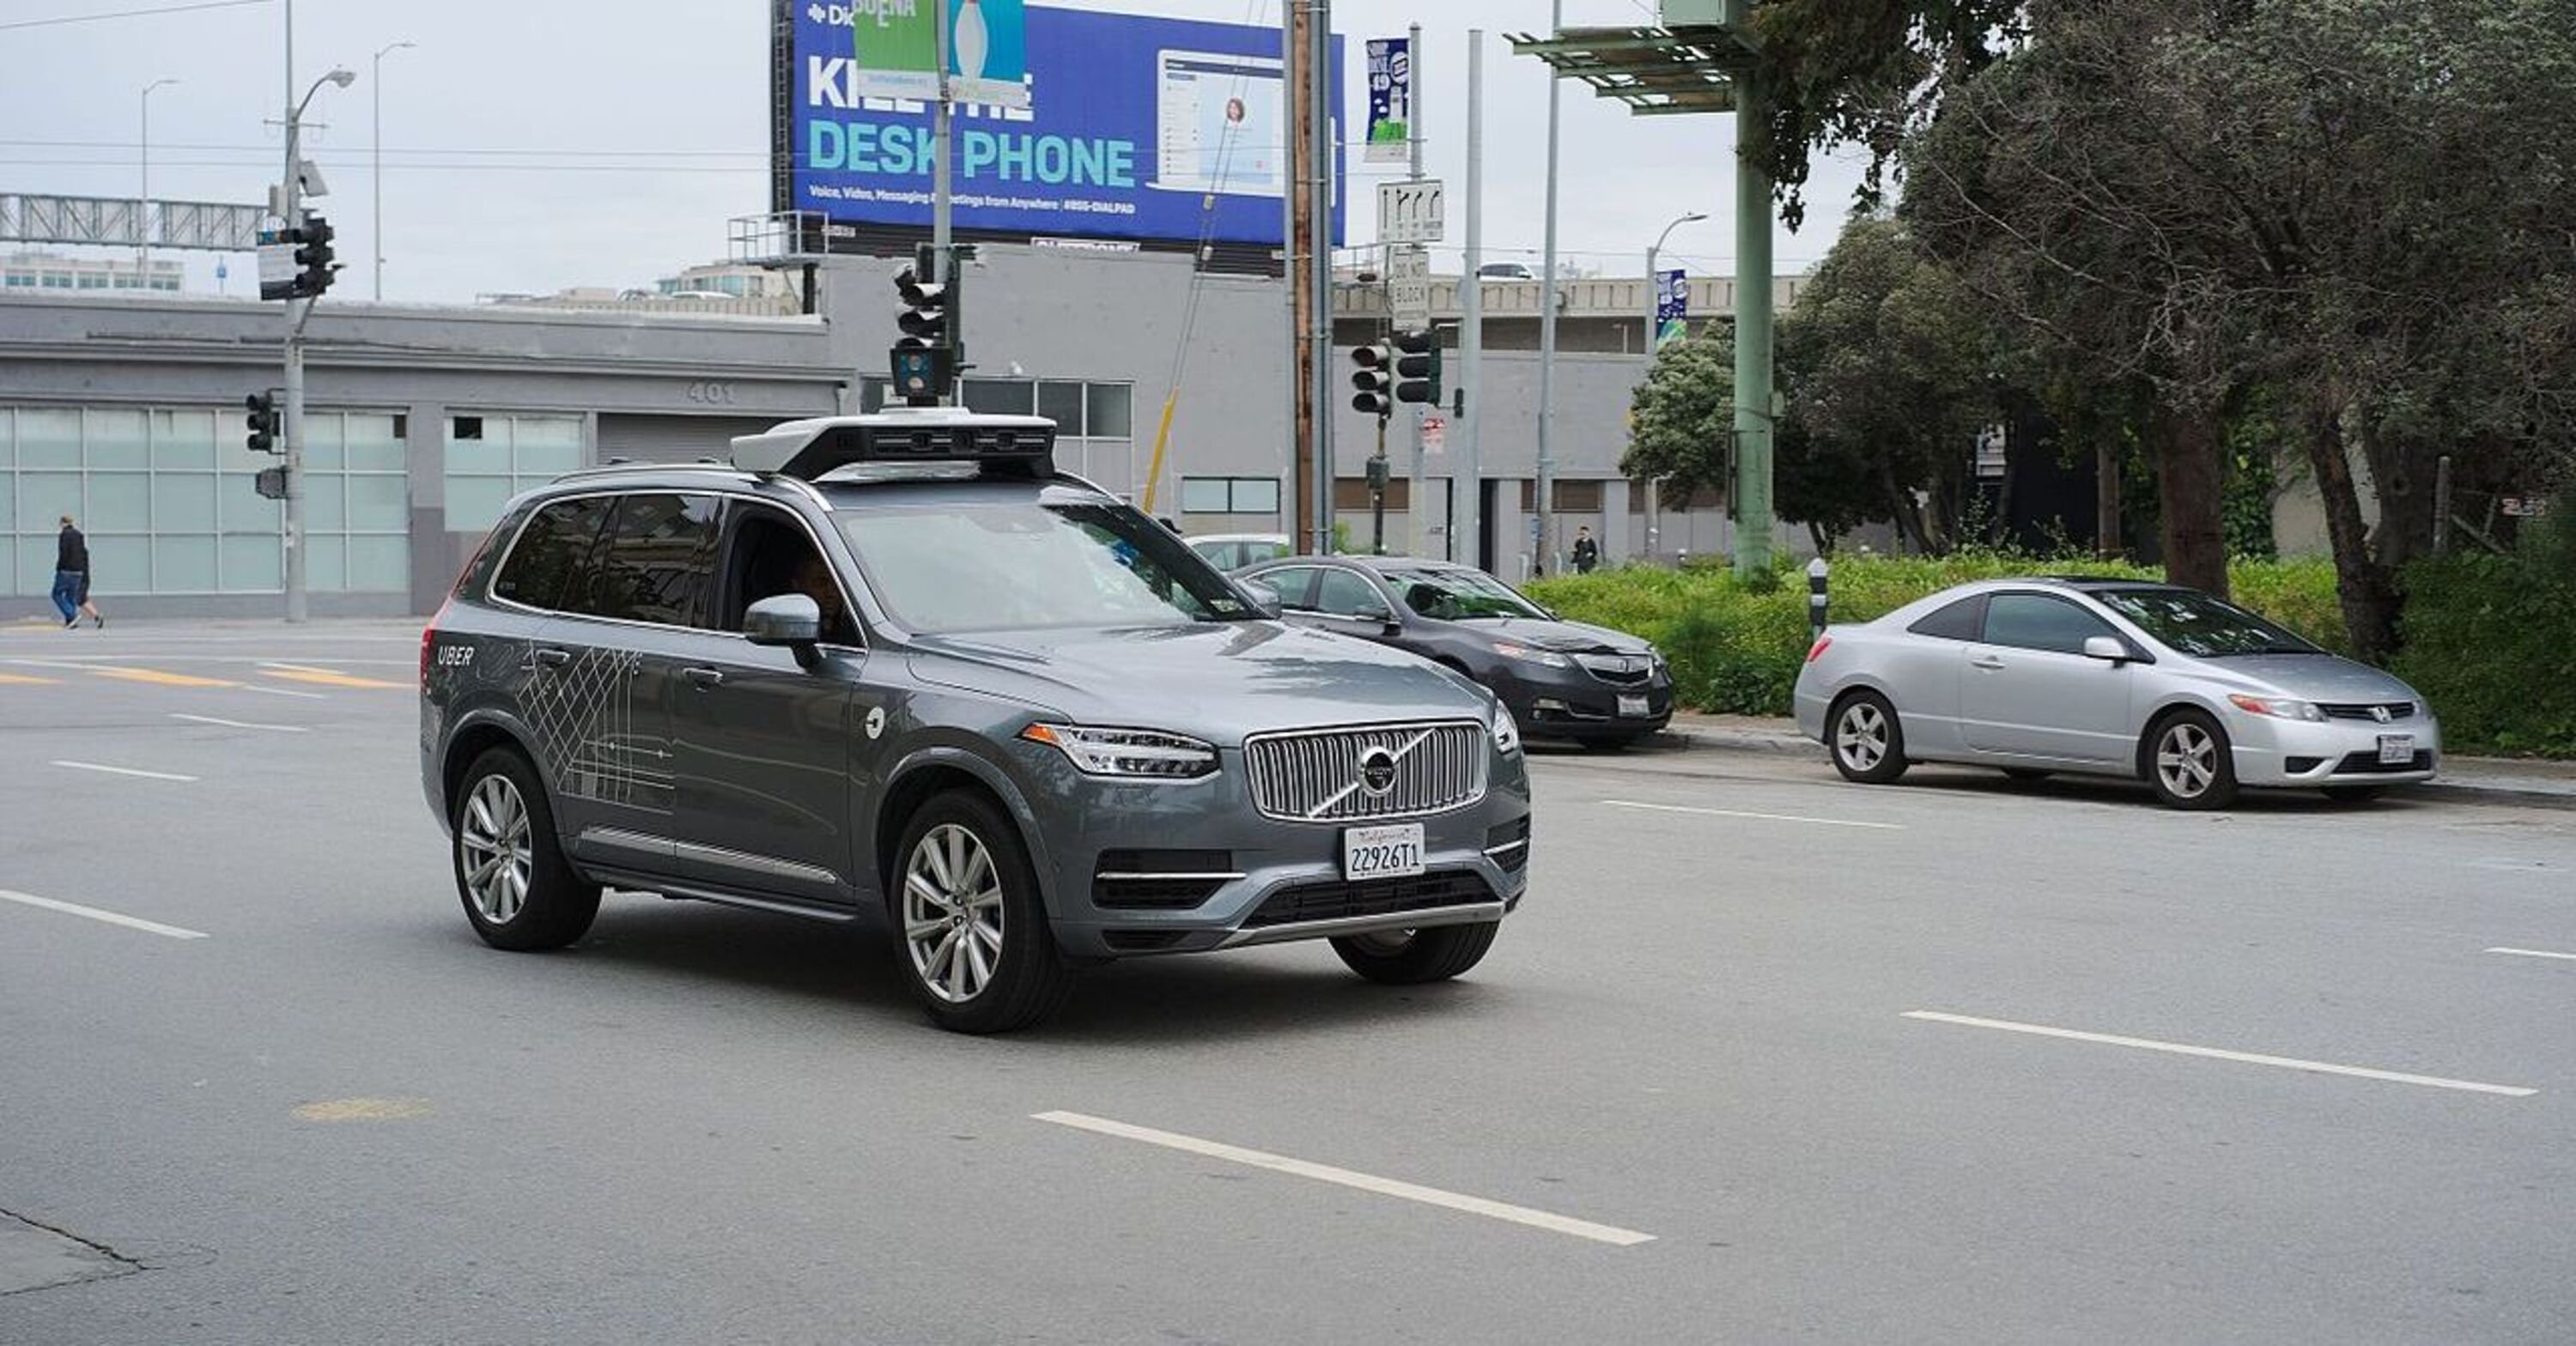 Auto a guida autonoma in test su strade pubbliche: arrivano anche in Italia